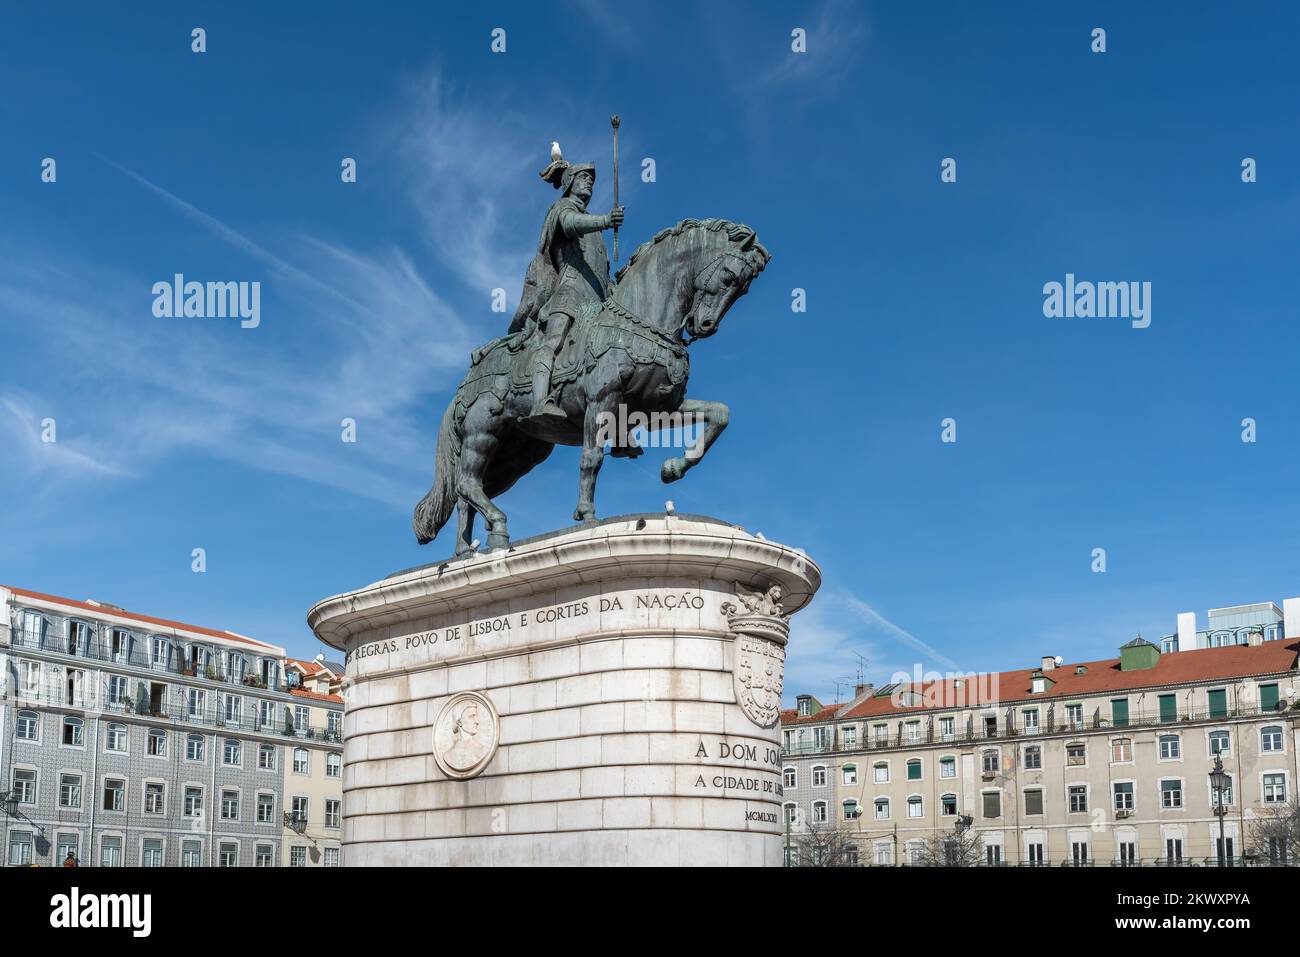 Statua del re Dom Joao i in Piazza Praca da Figueira - Lisbona, Portogallo Foto Stock